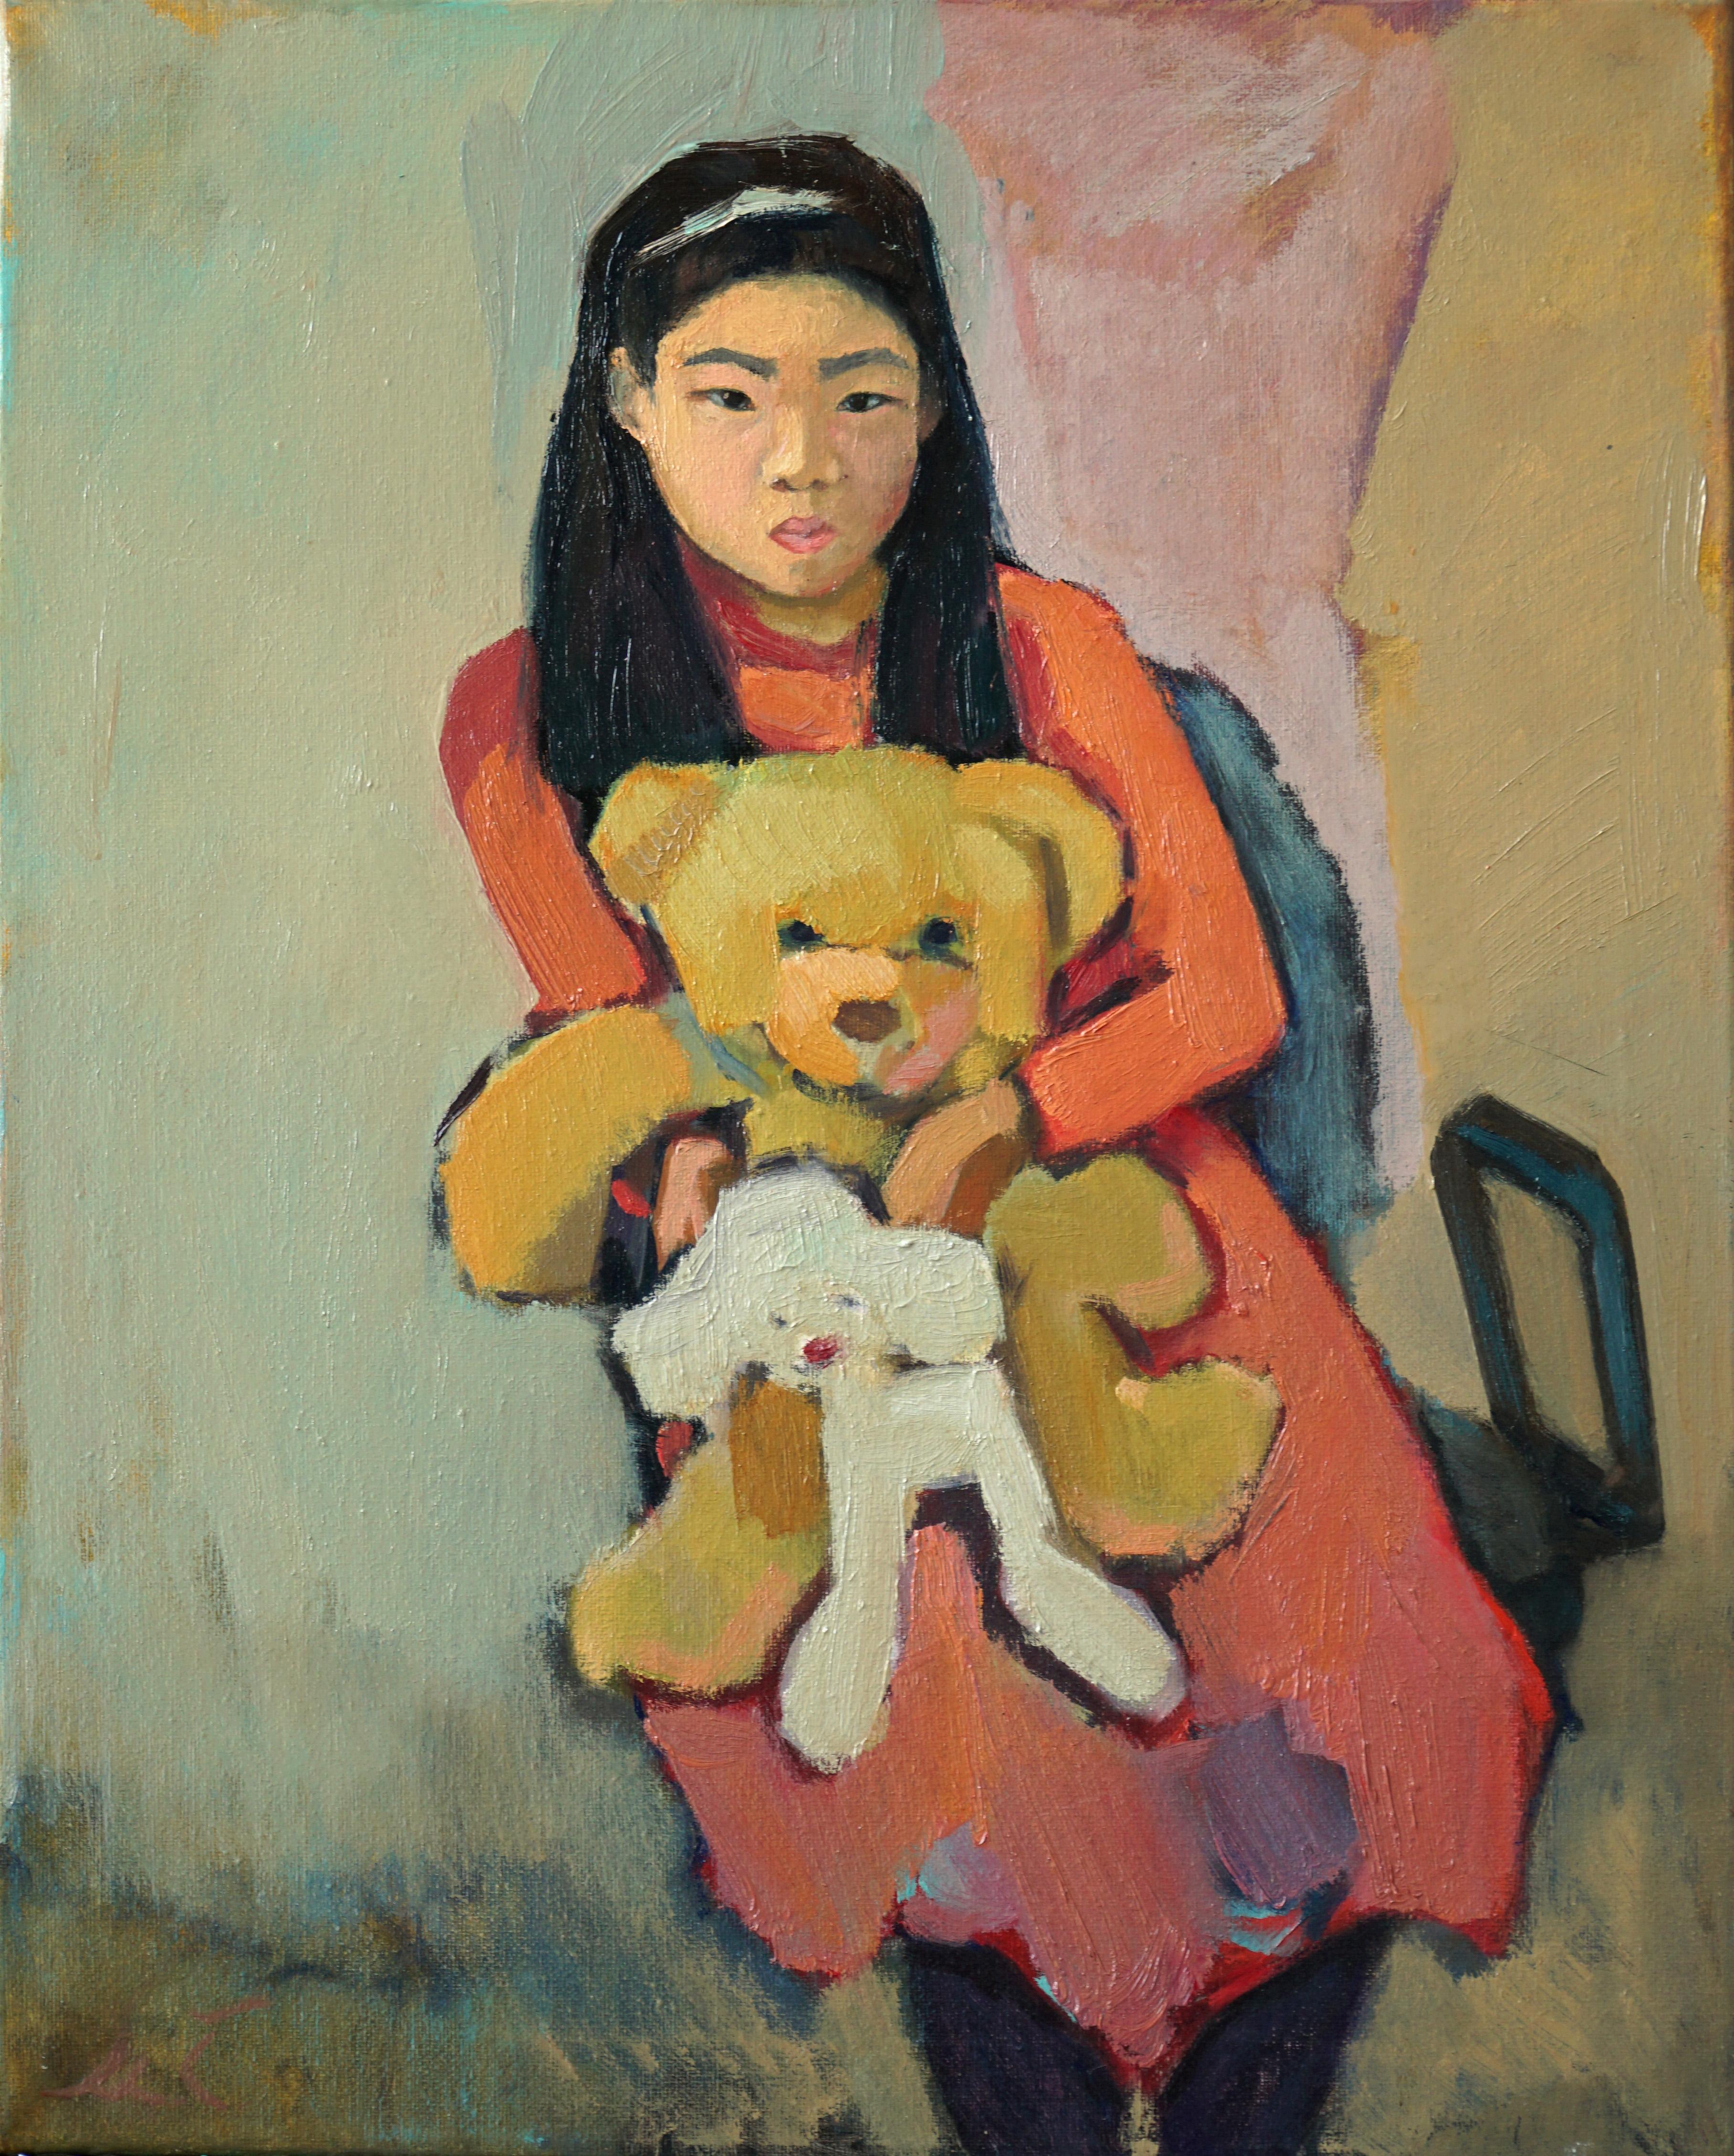 portrait de fille asiatique ours en peluche innocence jouets rose couleurs douces fine art classic